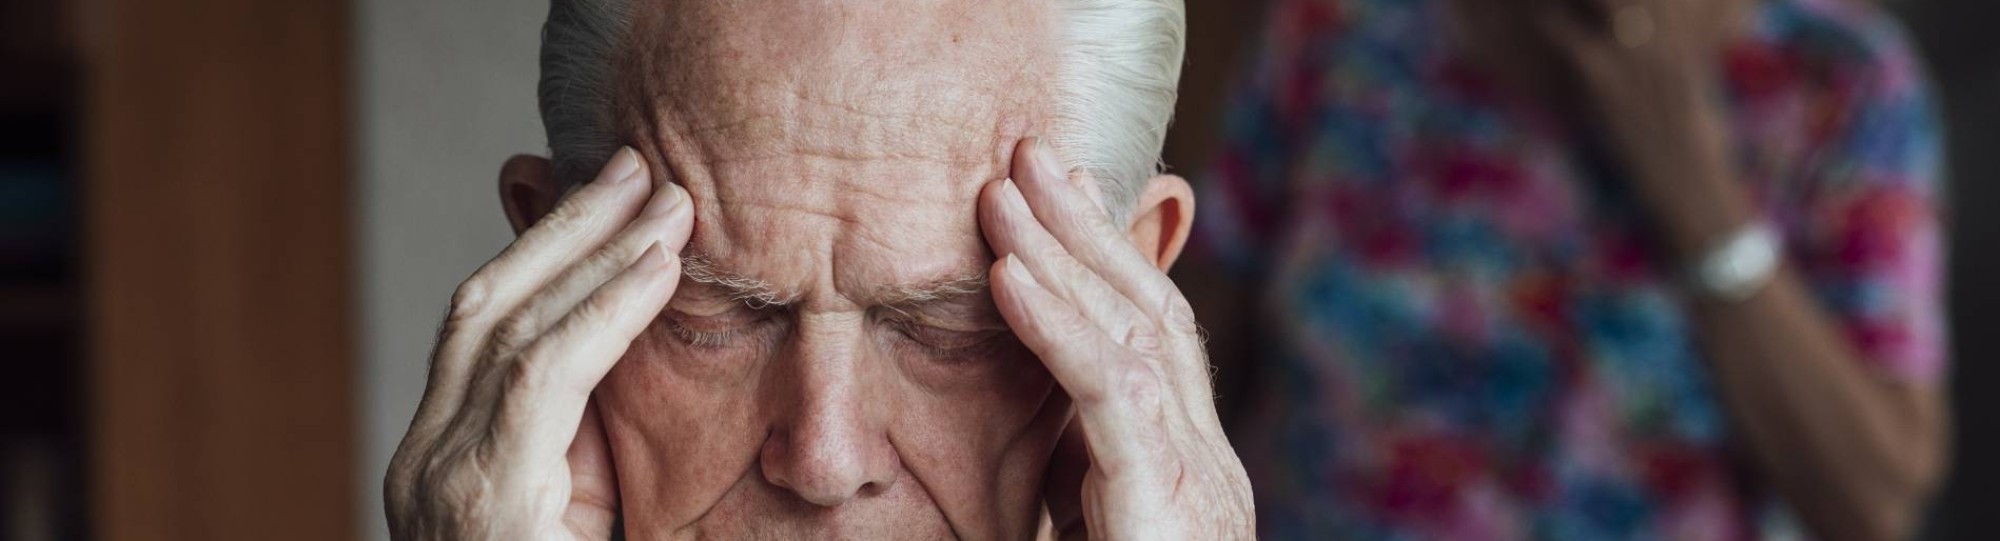 Oudere met dementie grijpt naar zijn hoofd